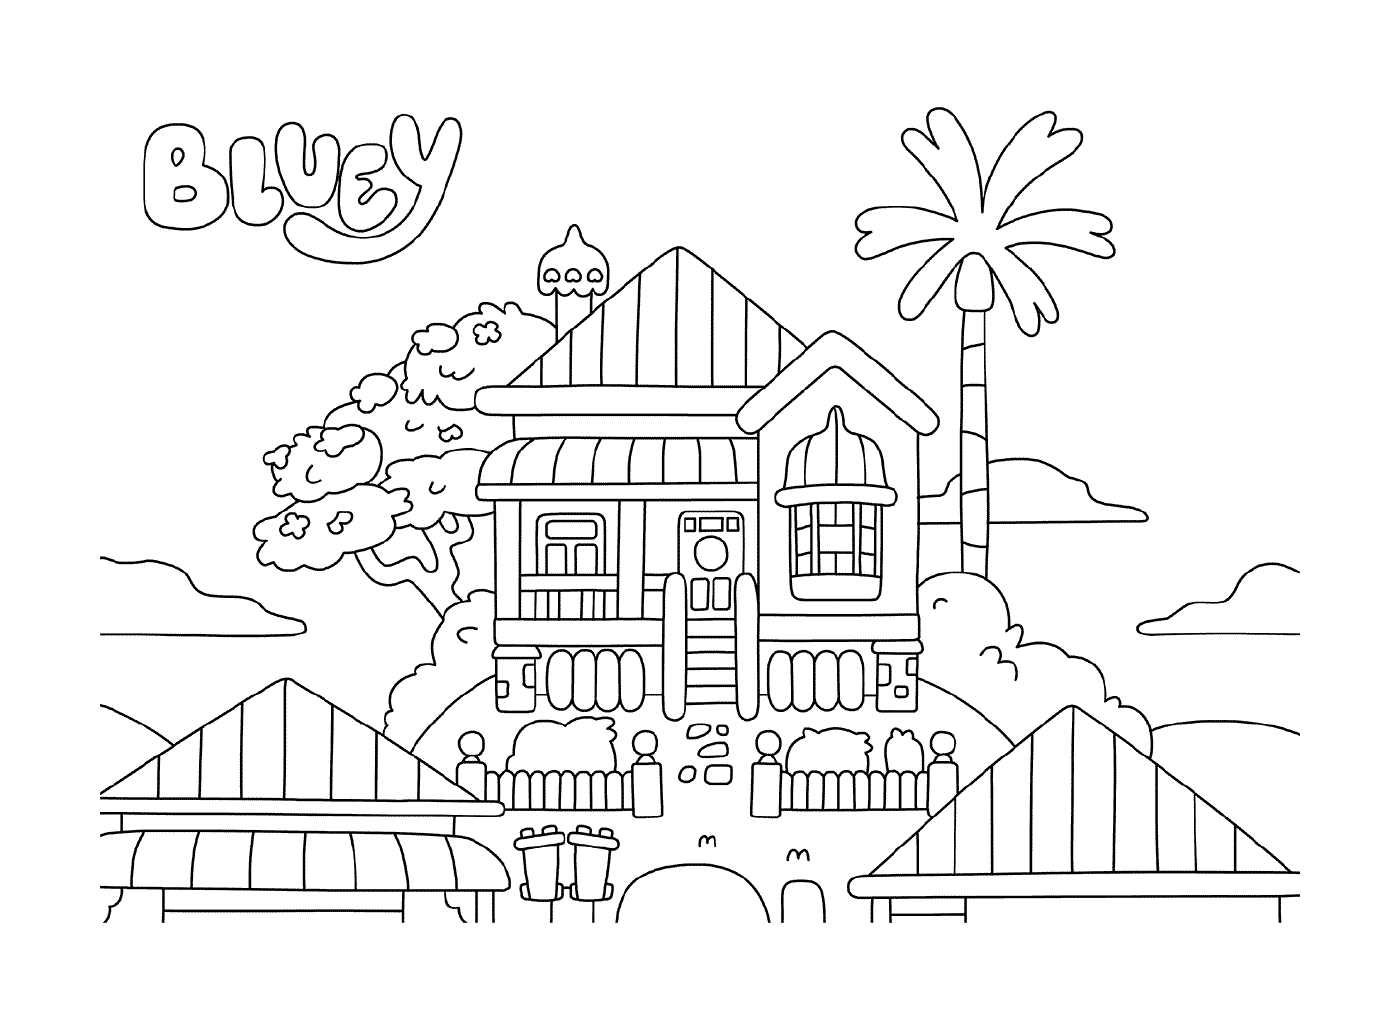  房子,后面有棕榈树,后面有棕榈树, 